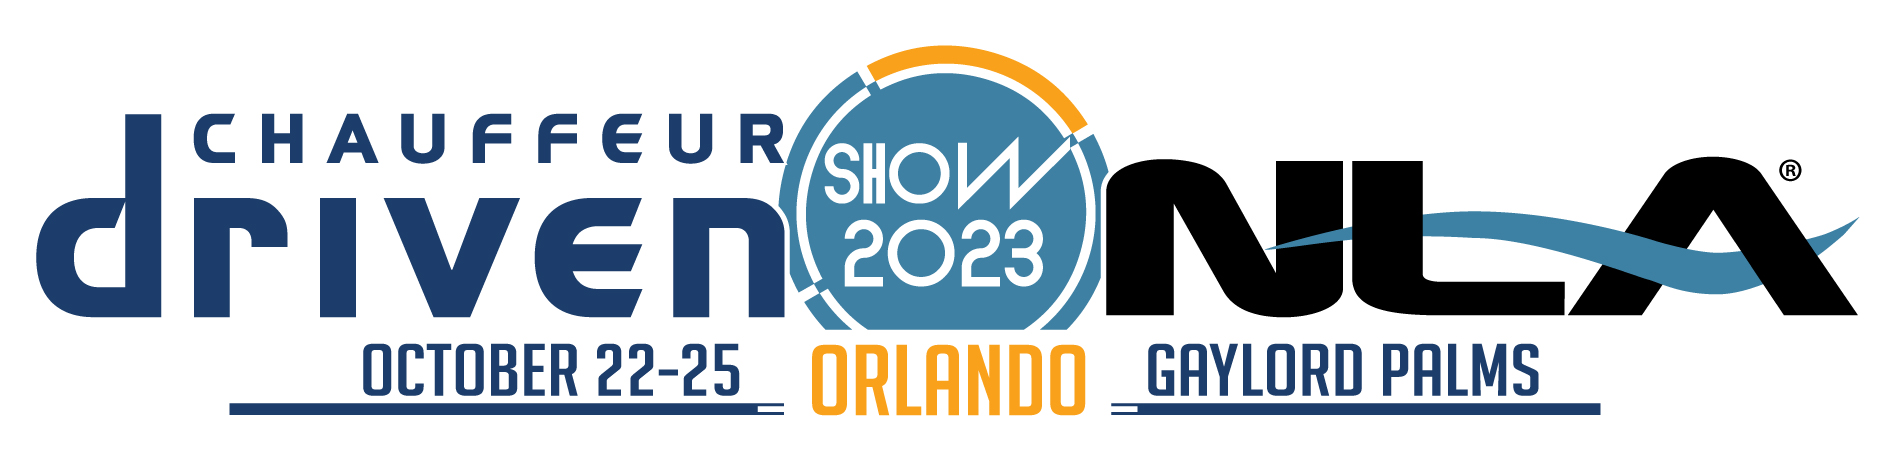 CD/NLA Show Orlando 2023